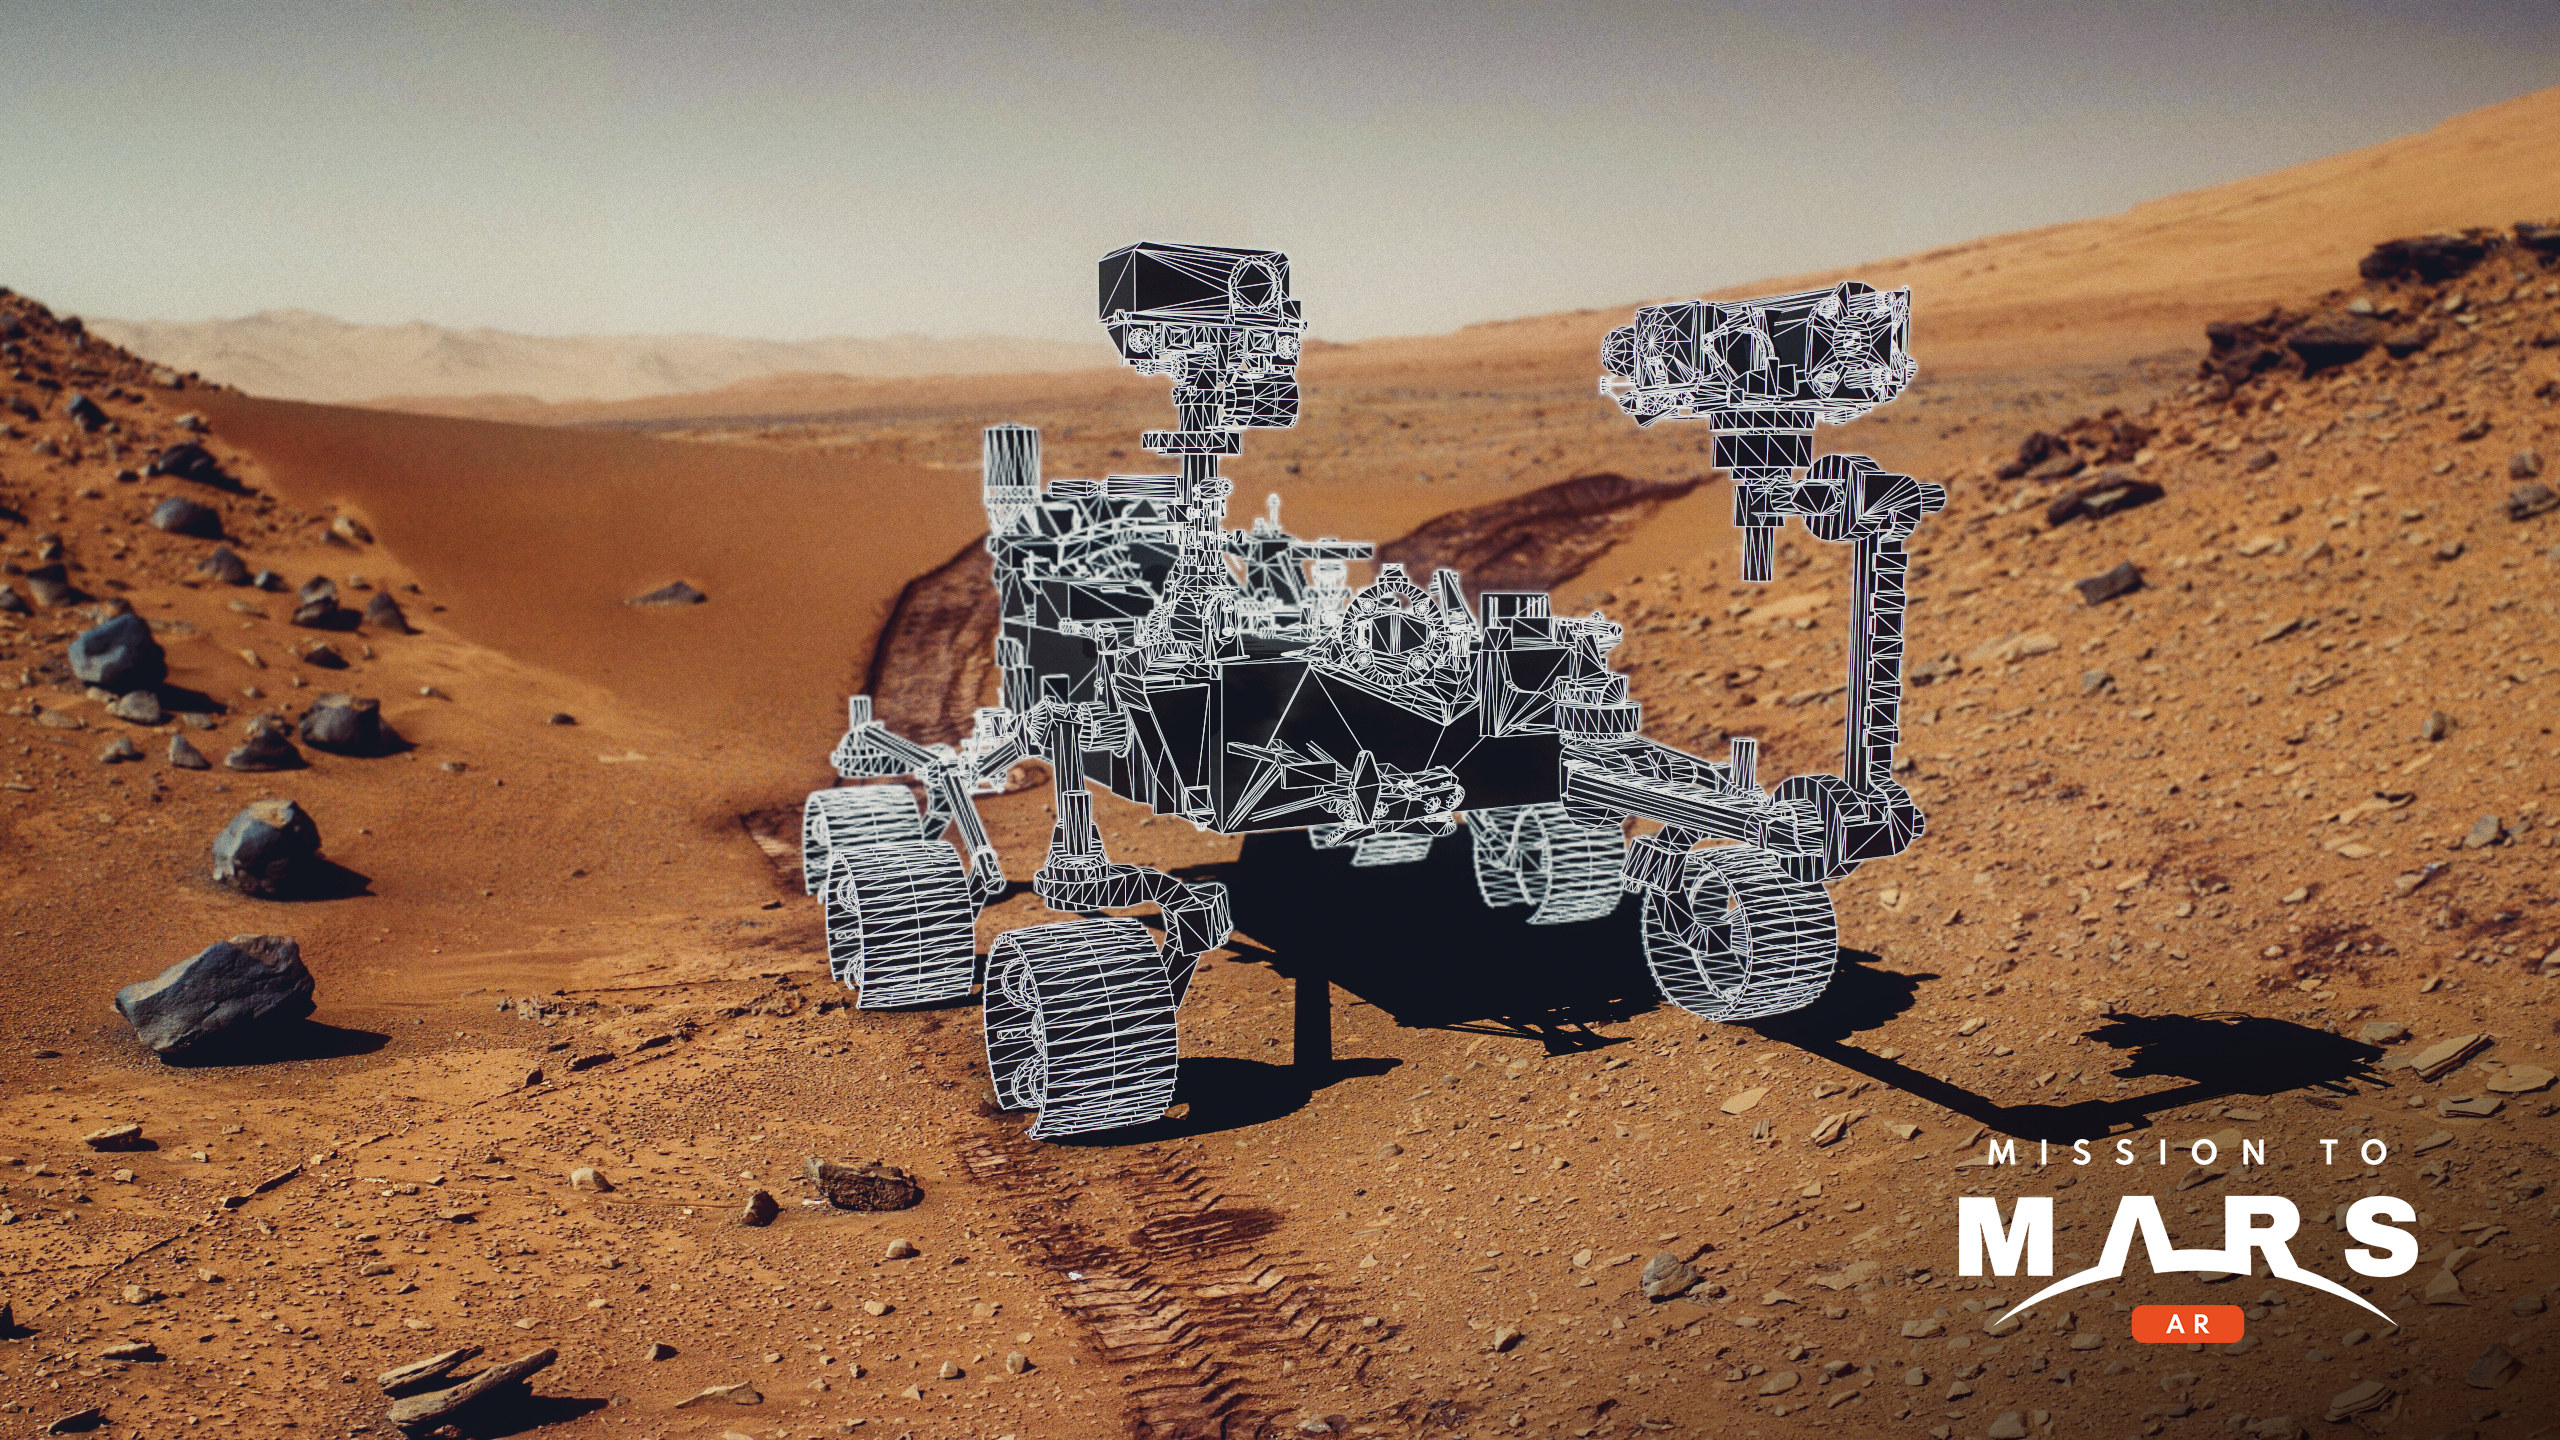 Aplikacja rzeczywistości rozszerzonej Mission to Mars AR